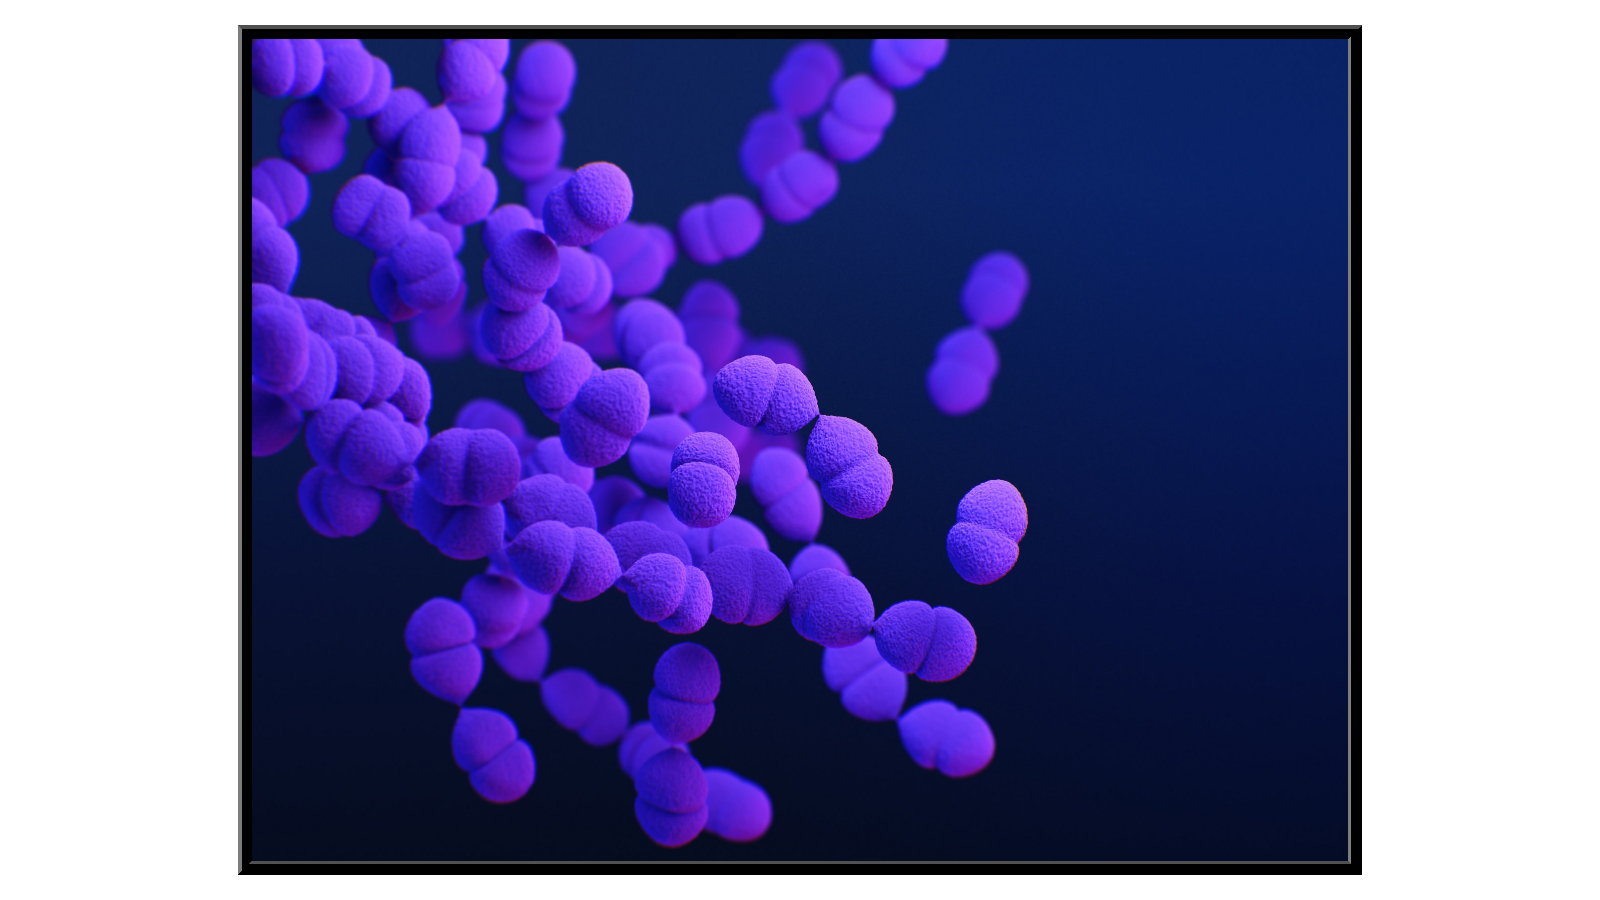 Streptococcus pneumoniae colony model